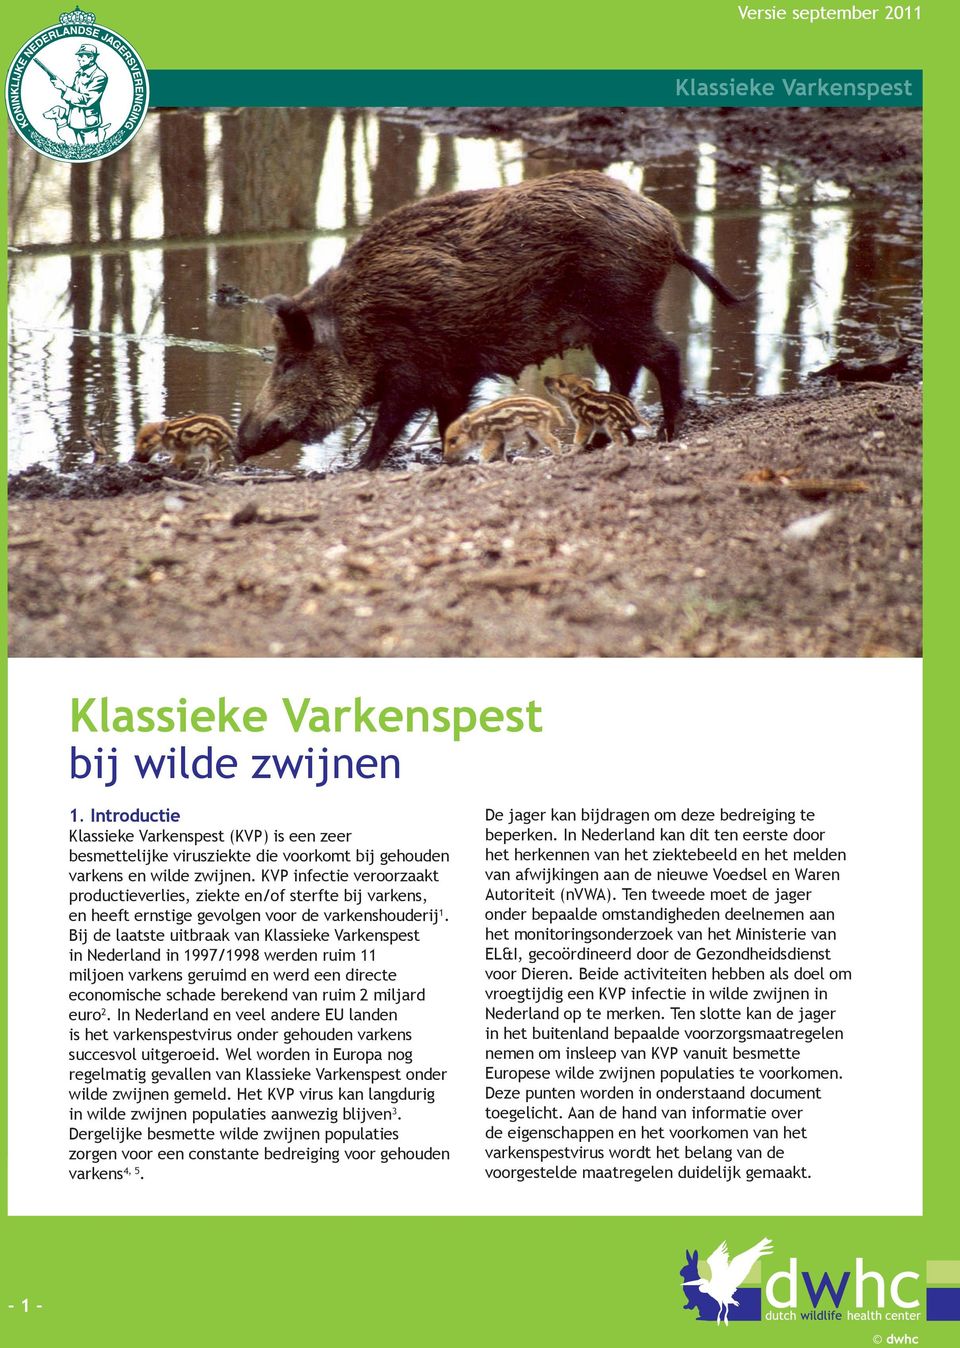 KVP infectie veroorzaakt productieverlies, ziekte en/of sterfte bij varkens, en heeft ernstige gevolgen voor de varkenshouderij 1.